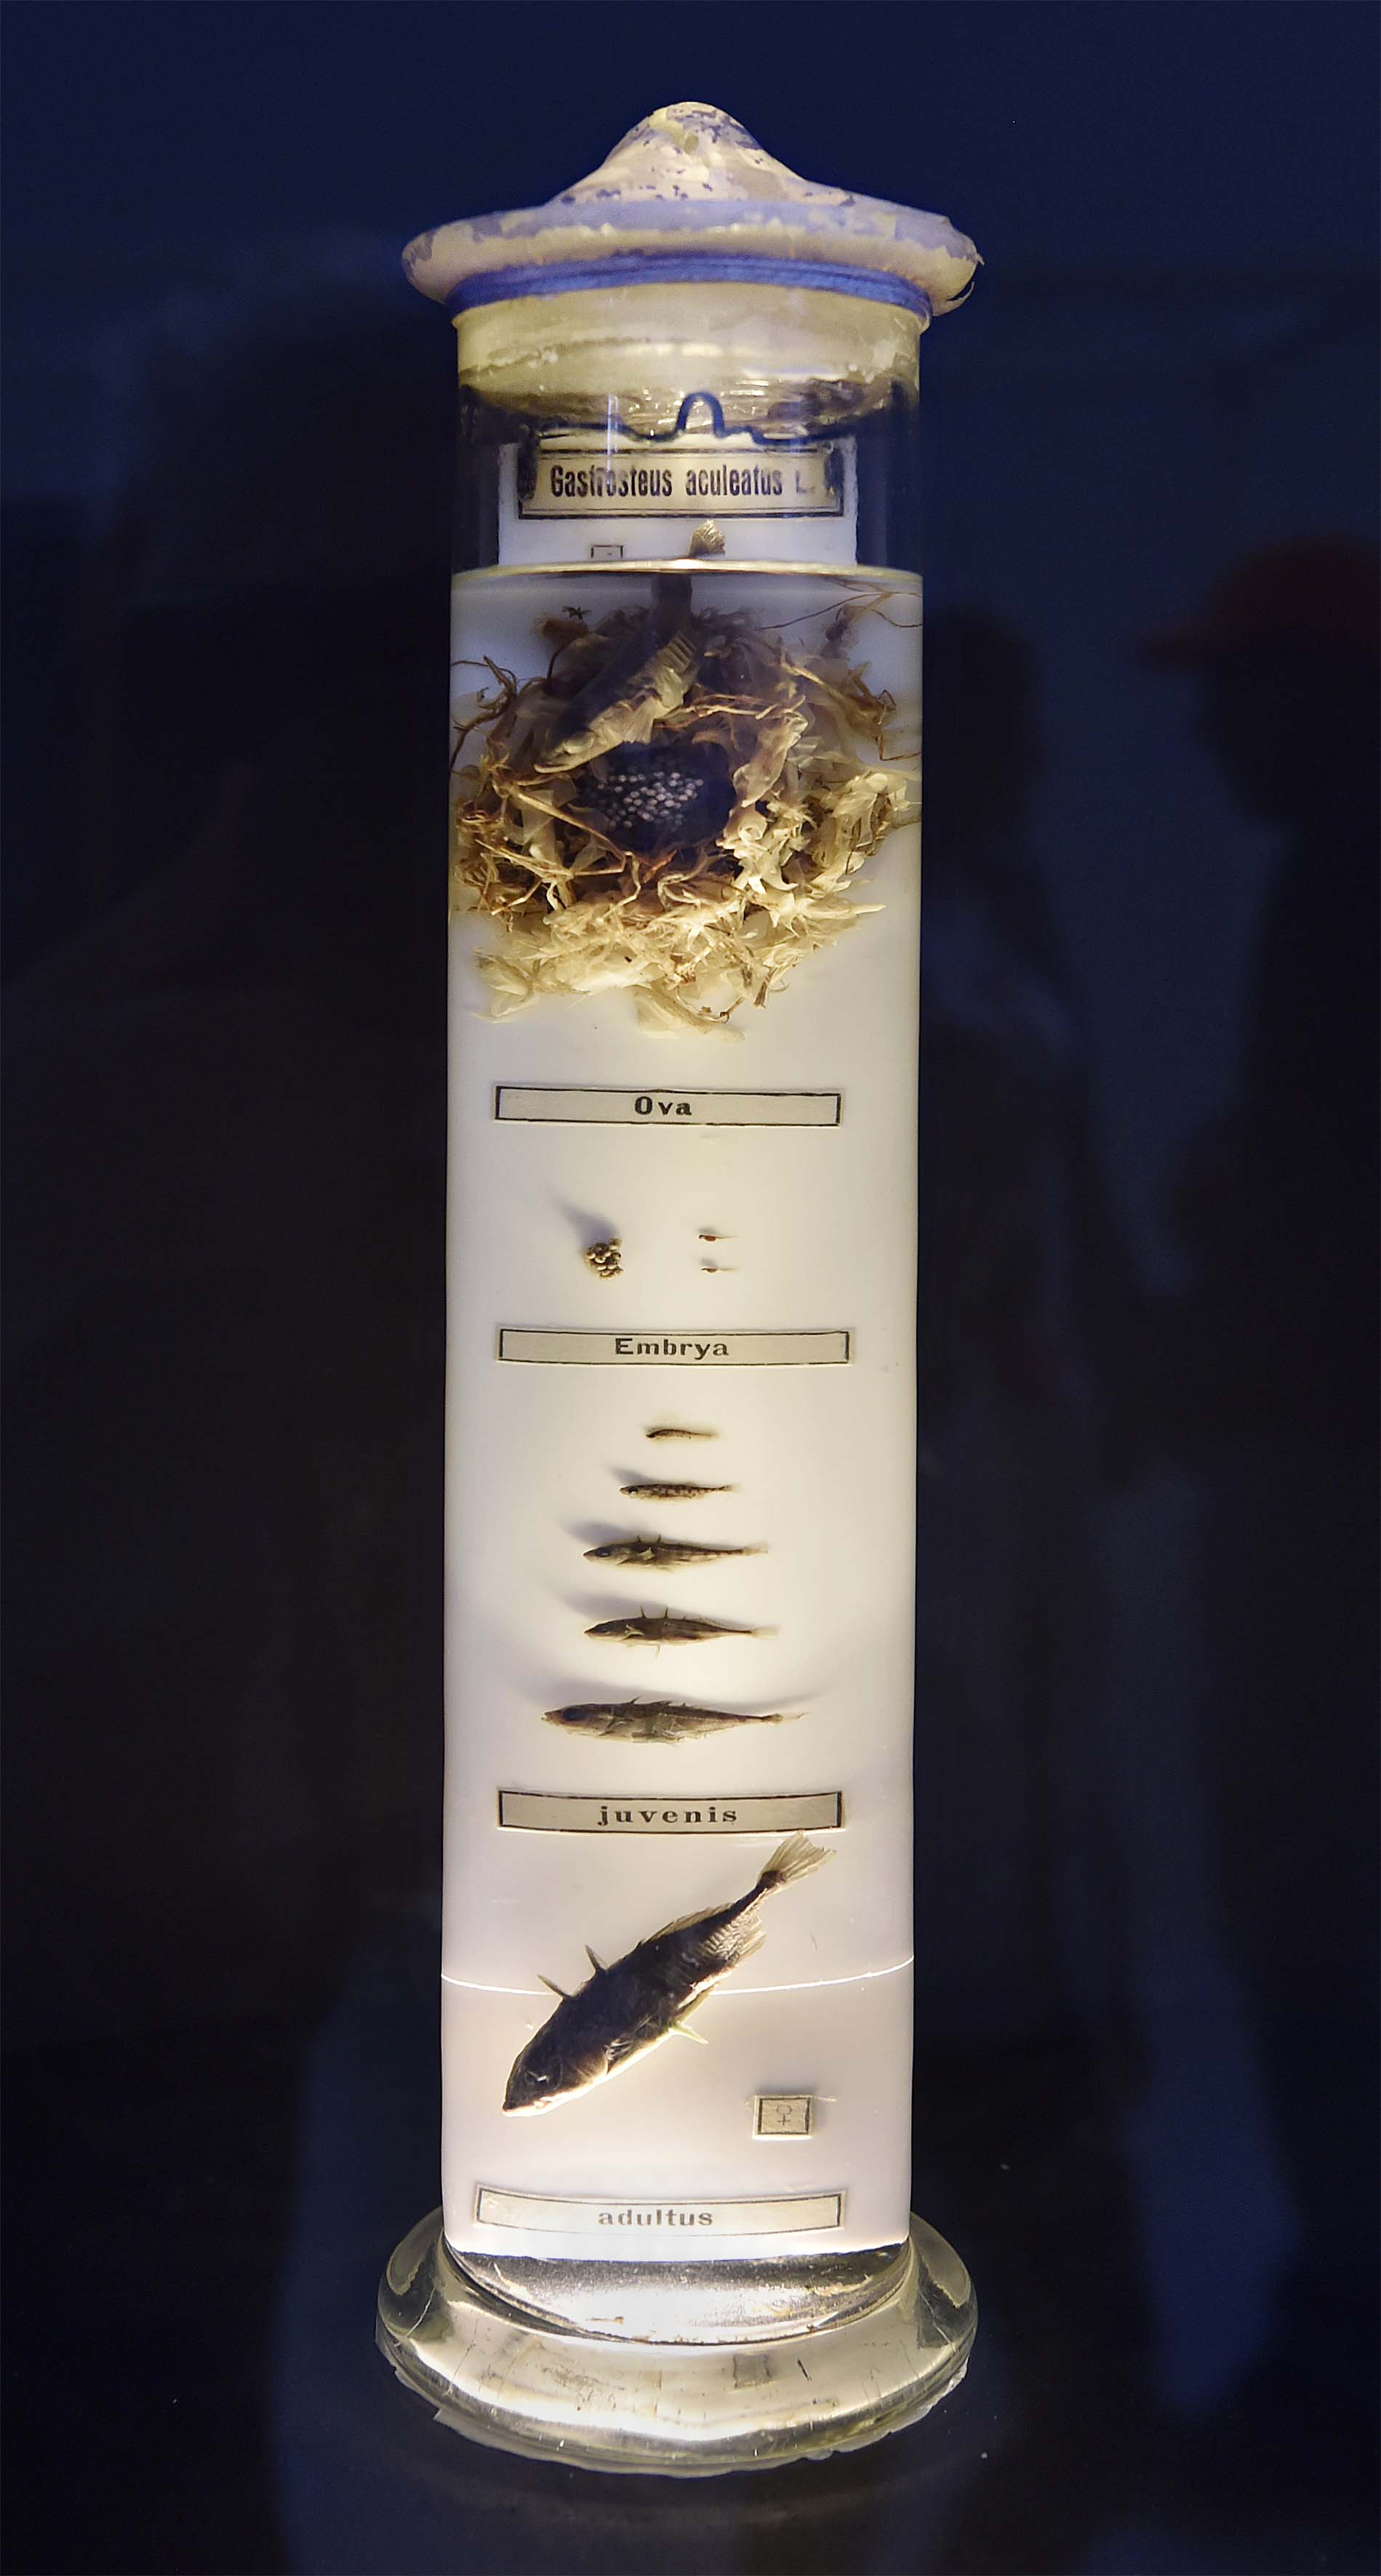 De verschillende ontwikkelingsstadia van de driedoornige stekelbaars. Van eitjes in een nest tot volgroeid.The various development stages of the threespined stickleback. From eggs to full maturity.